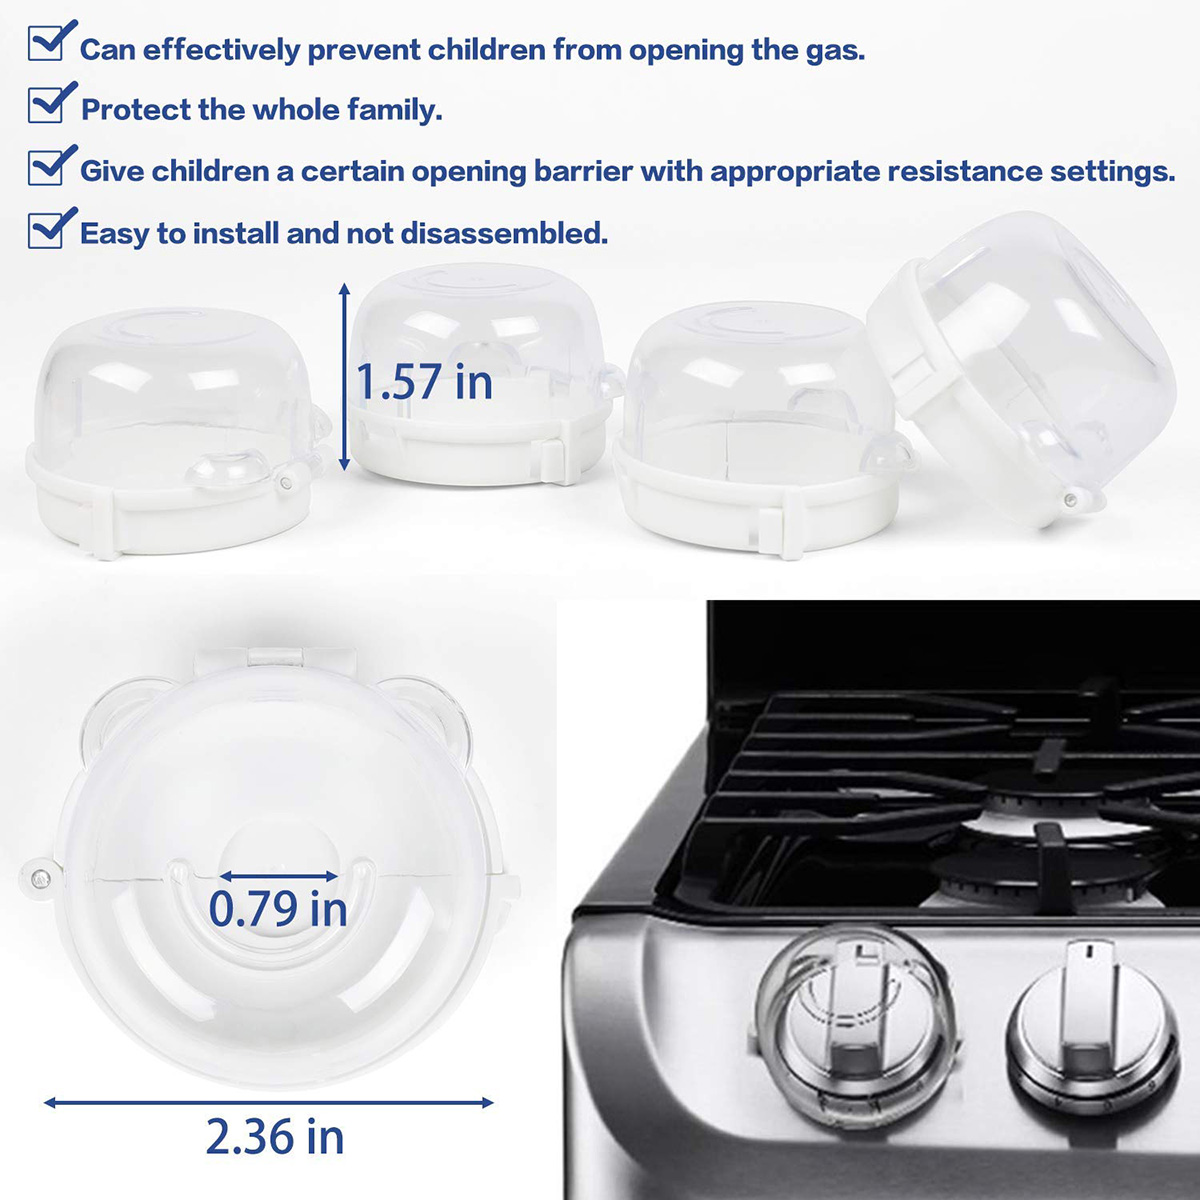 Komfur knap dækker baby børn sikkerhed ovn gaskomfur knop beskyttelse låse til børne småbørn køkken sikkerhed